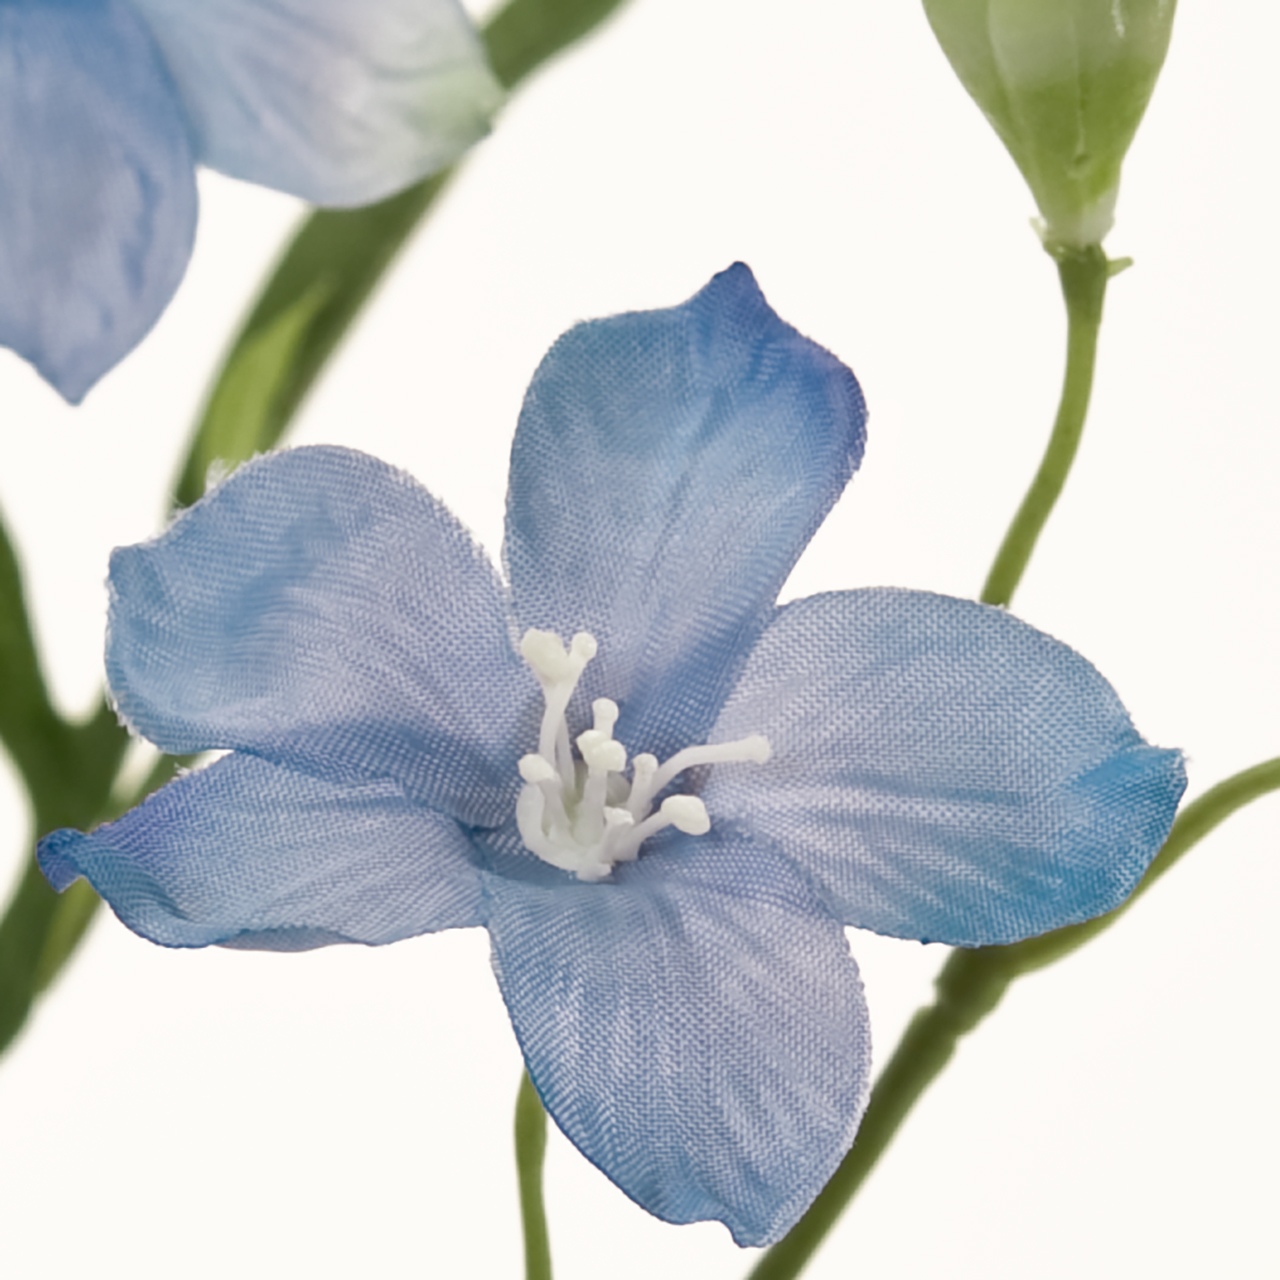 マイフラ 通販 Magiq スプレーデルフィニウム ライトブルー アーティフィシャルフラワー 造花 Fm0039 005 デルフィニウム ライトブルー Magiq アーティフィシャルフラワー 造花 全国にmagiq 花器 花資材などをお届けします